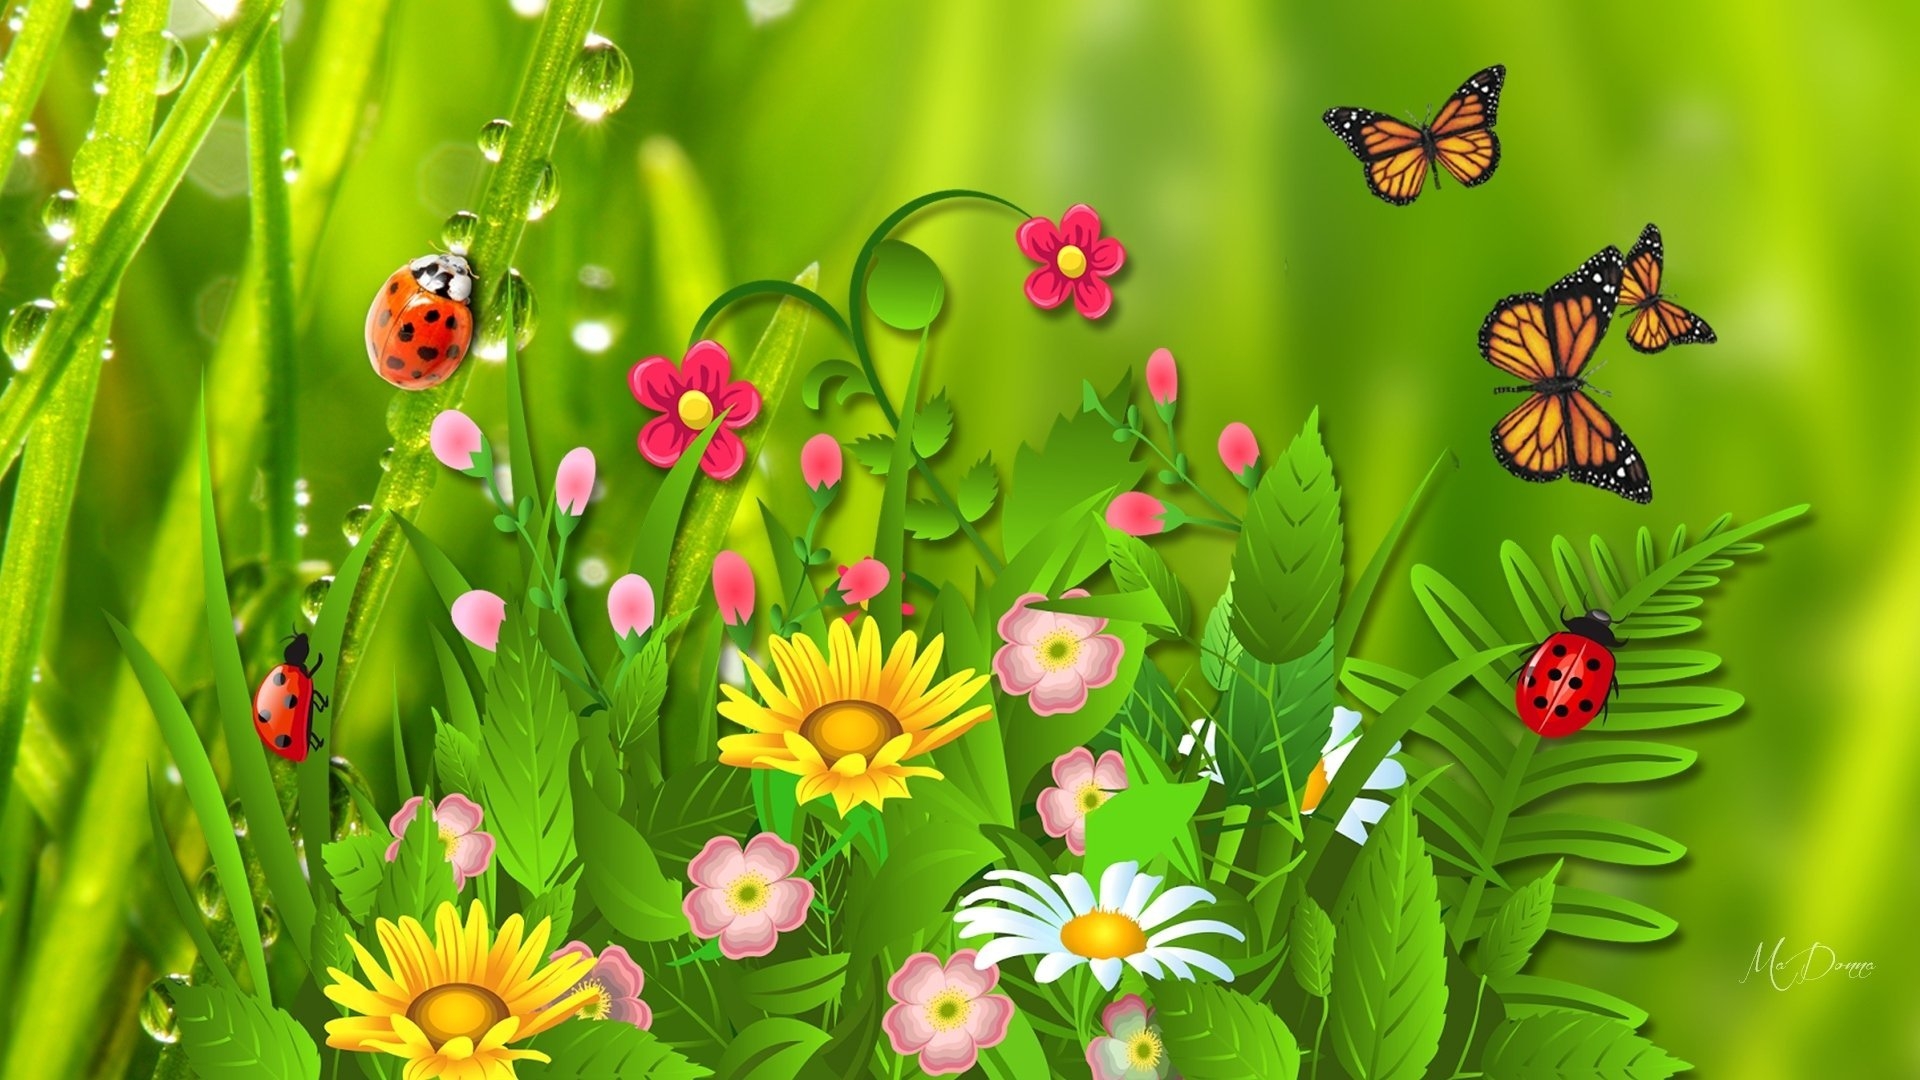 Про лета бабочка. Бабочка на цветке. Полянка с цветами. Поляна с цветами и бабочками. Лето насекомые.